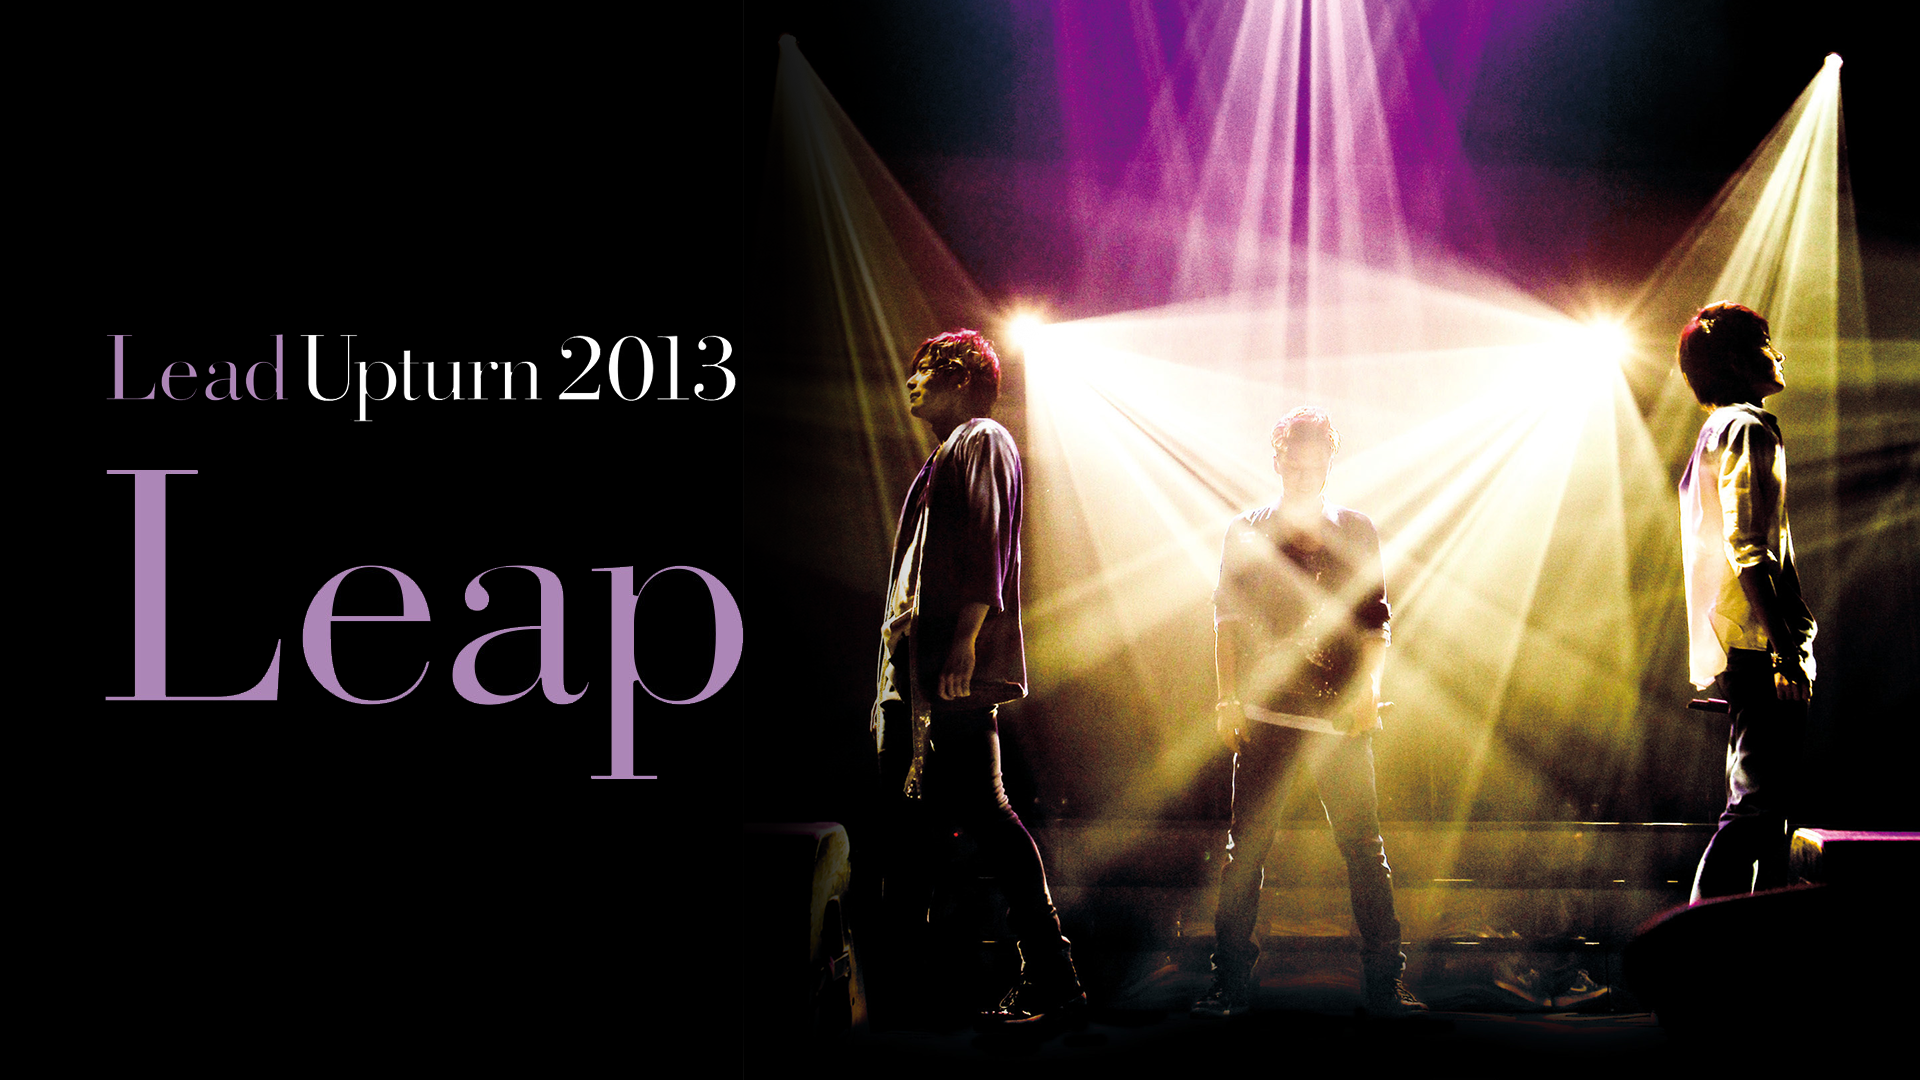 Lead Upturn 2013 ～Leap～(音楽・ライブ / 2013) - 動画配信 | U-NEXT 31日間無料トライアル